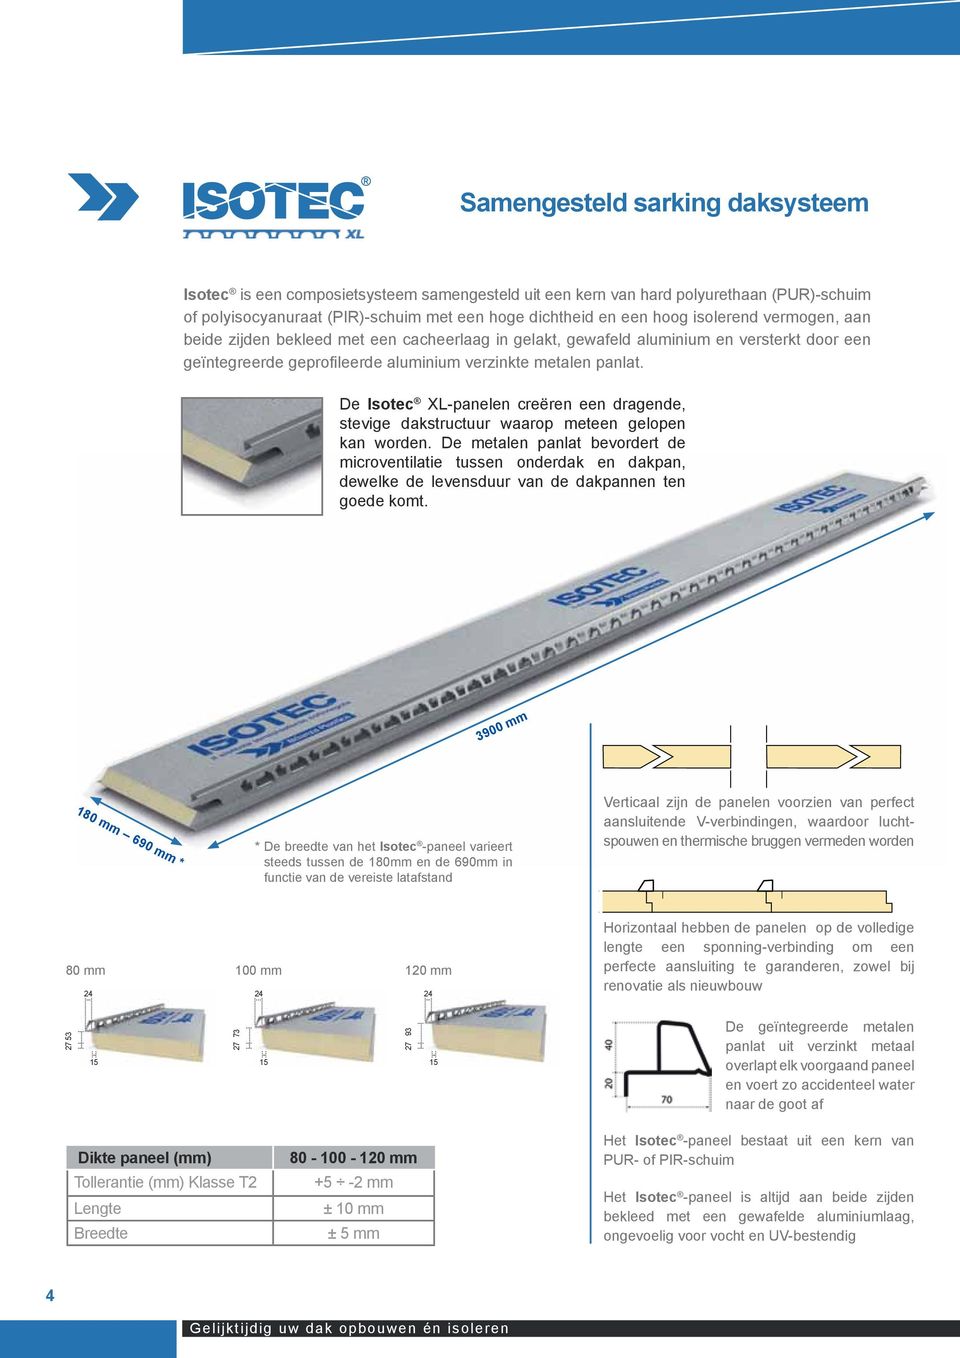 De Isotec XL-panelen creëren een dragende, stevige dakstructuur waarop meteen gelopen kan worden.